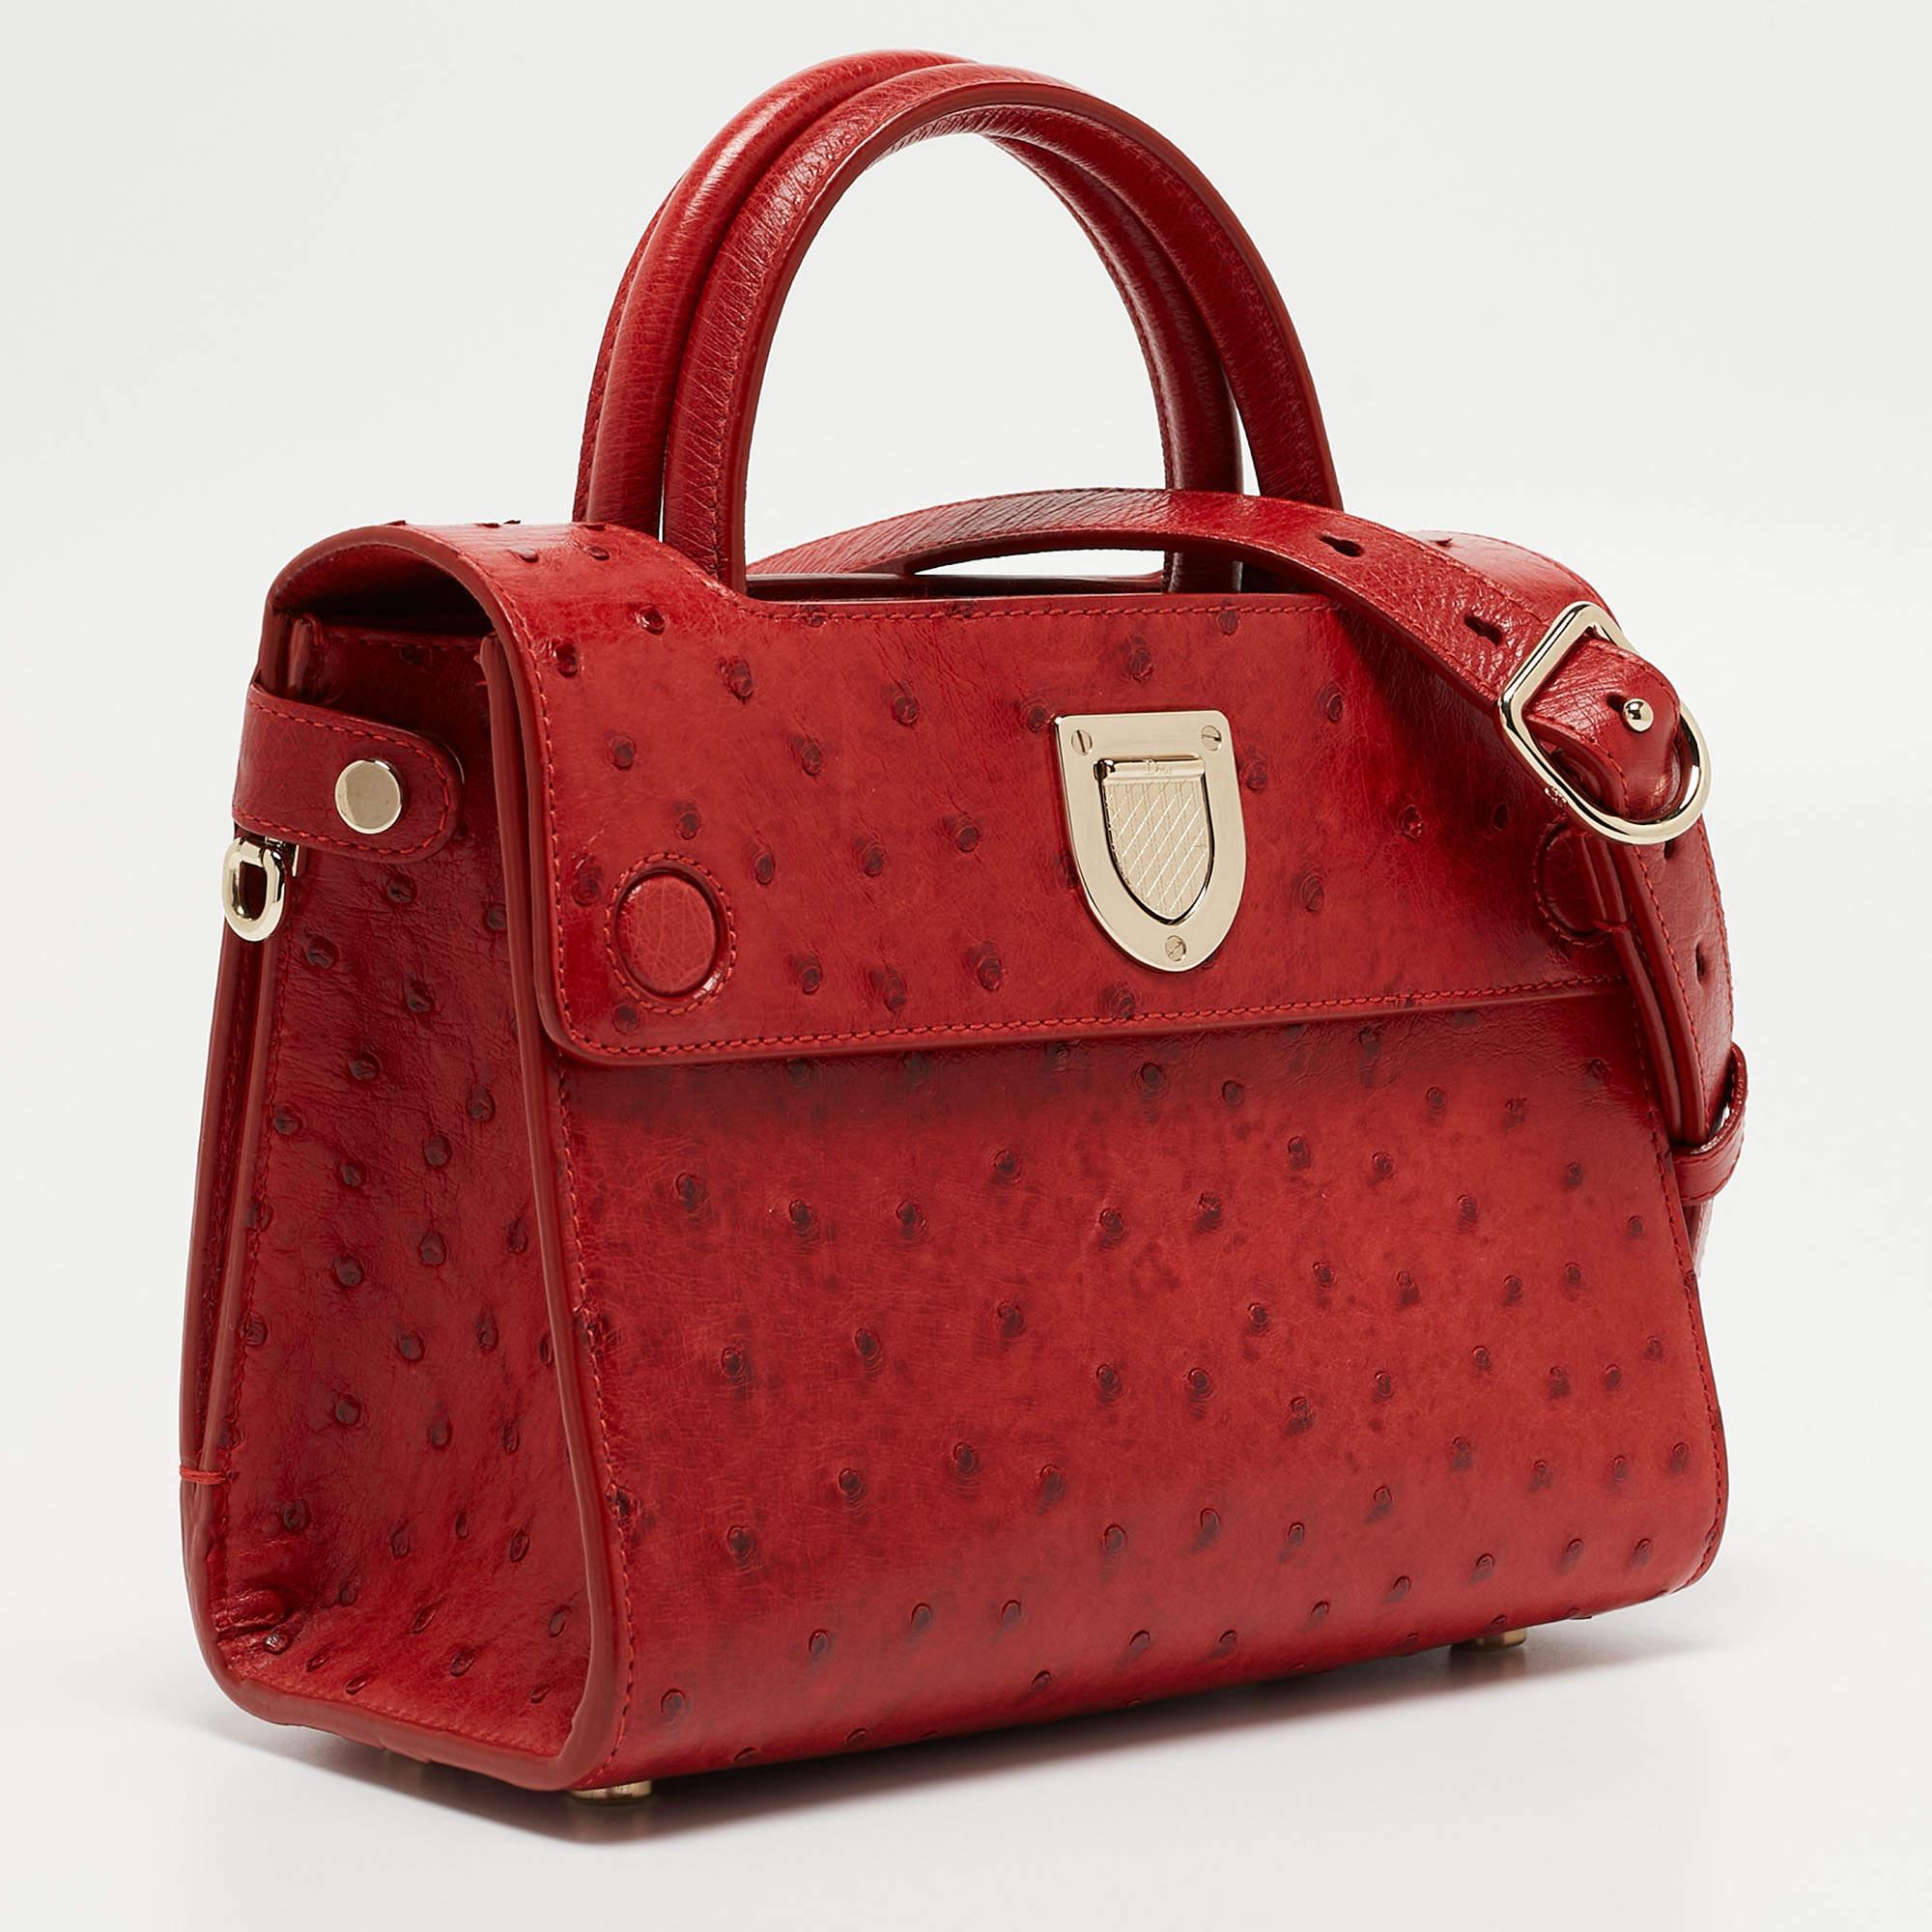 Le fourre-tout Dior Diorever respire le luxe avec son cuir d'autruche rouge vif et son design emblématique. Le format mini offre un mélange parfait d'élégance et de praticité. Le sac est doté d'un fermoir distinctif en forme d'écusson, de solides